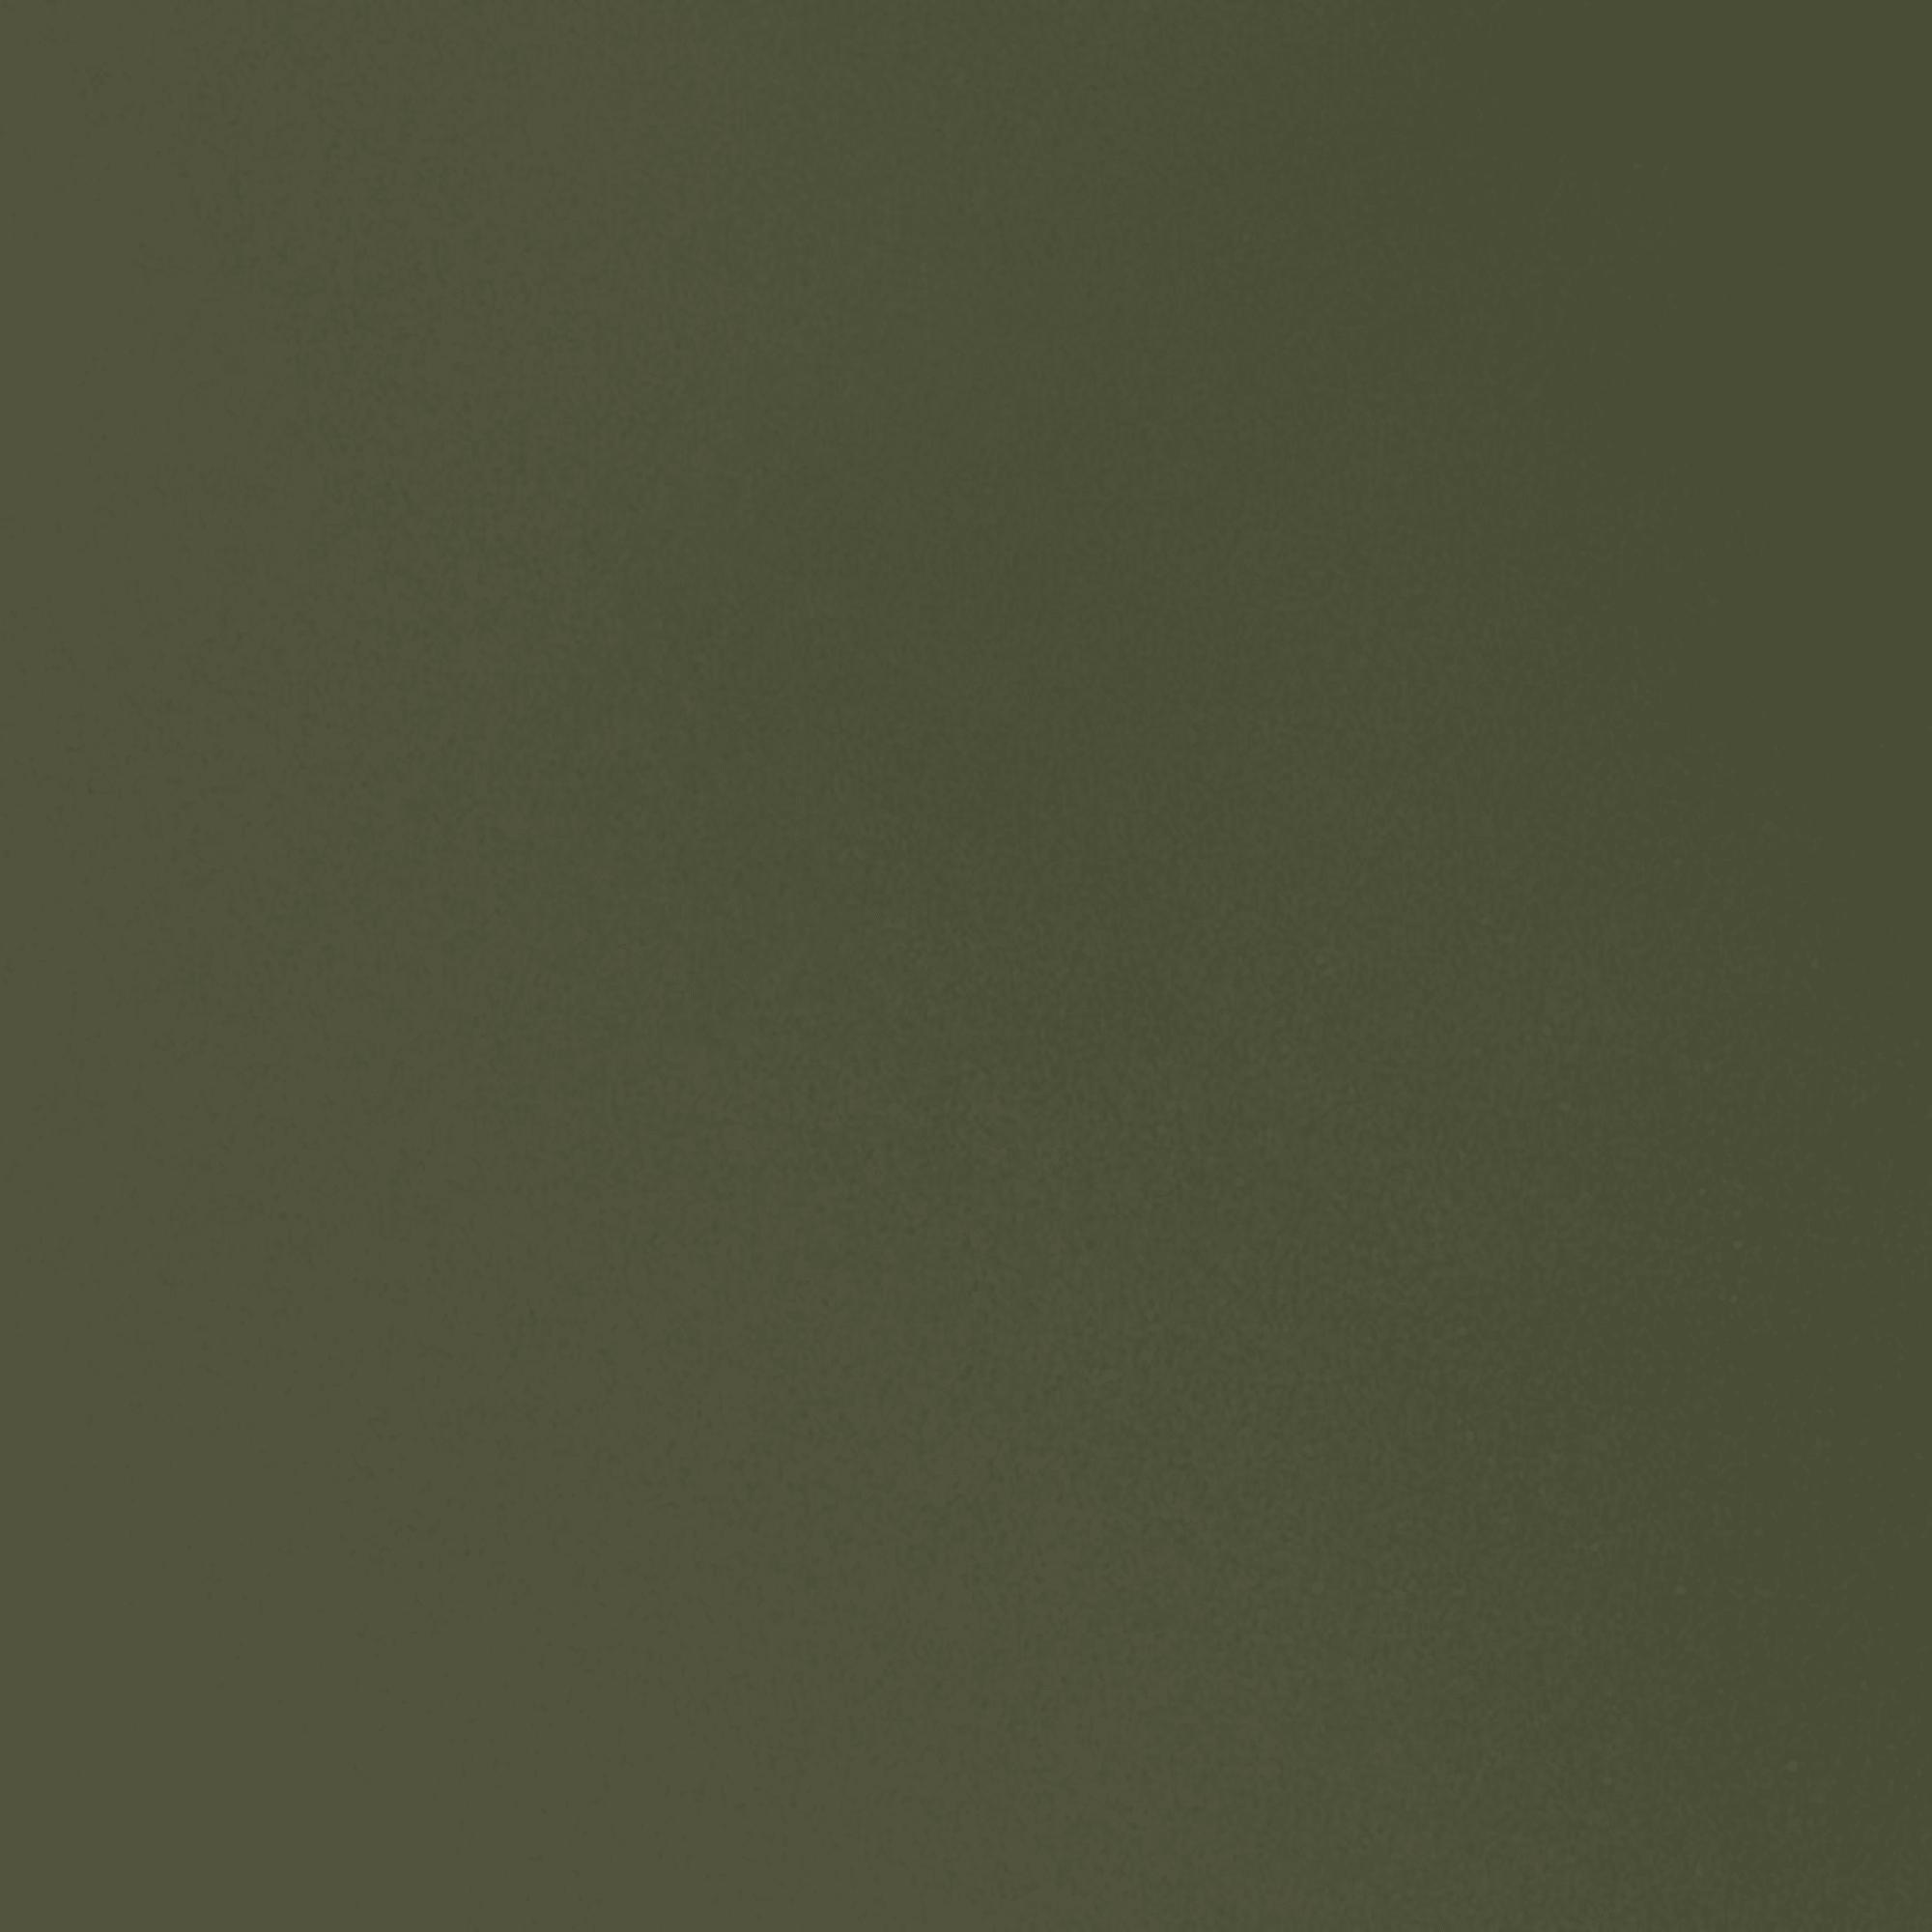 Fdb Møbler C35 B Esstisch Eiche, Olive Linoleum, 95x220cm